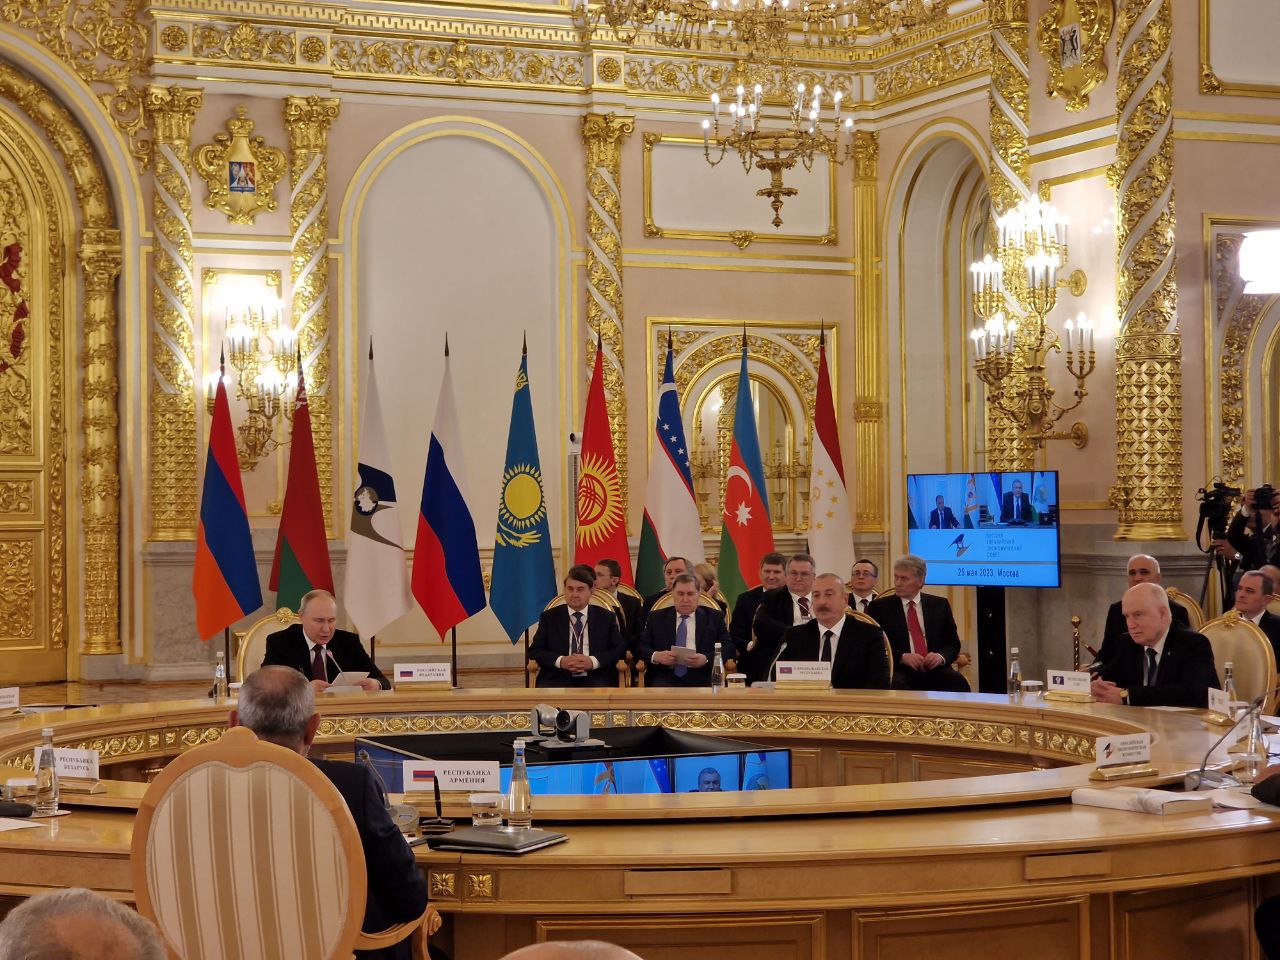 Пельмени с осетриной и мусс из груши: Лайф узнал, чем угощают лидеров стран ЕАЭС на обеде в Кремле